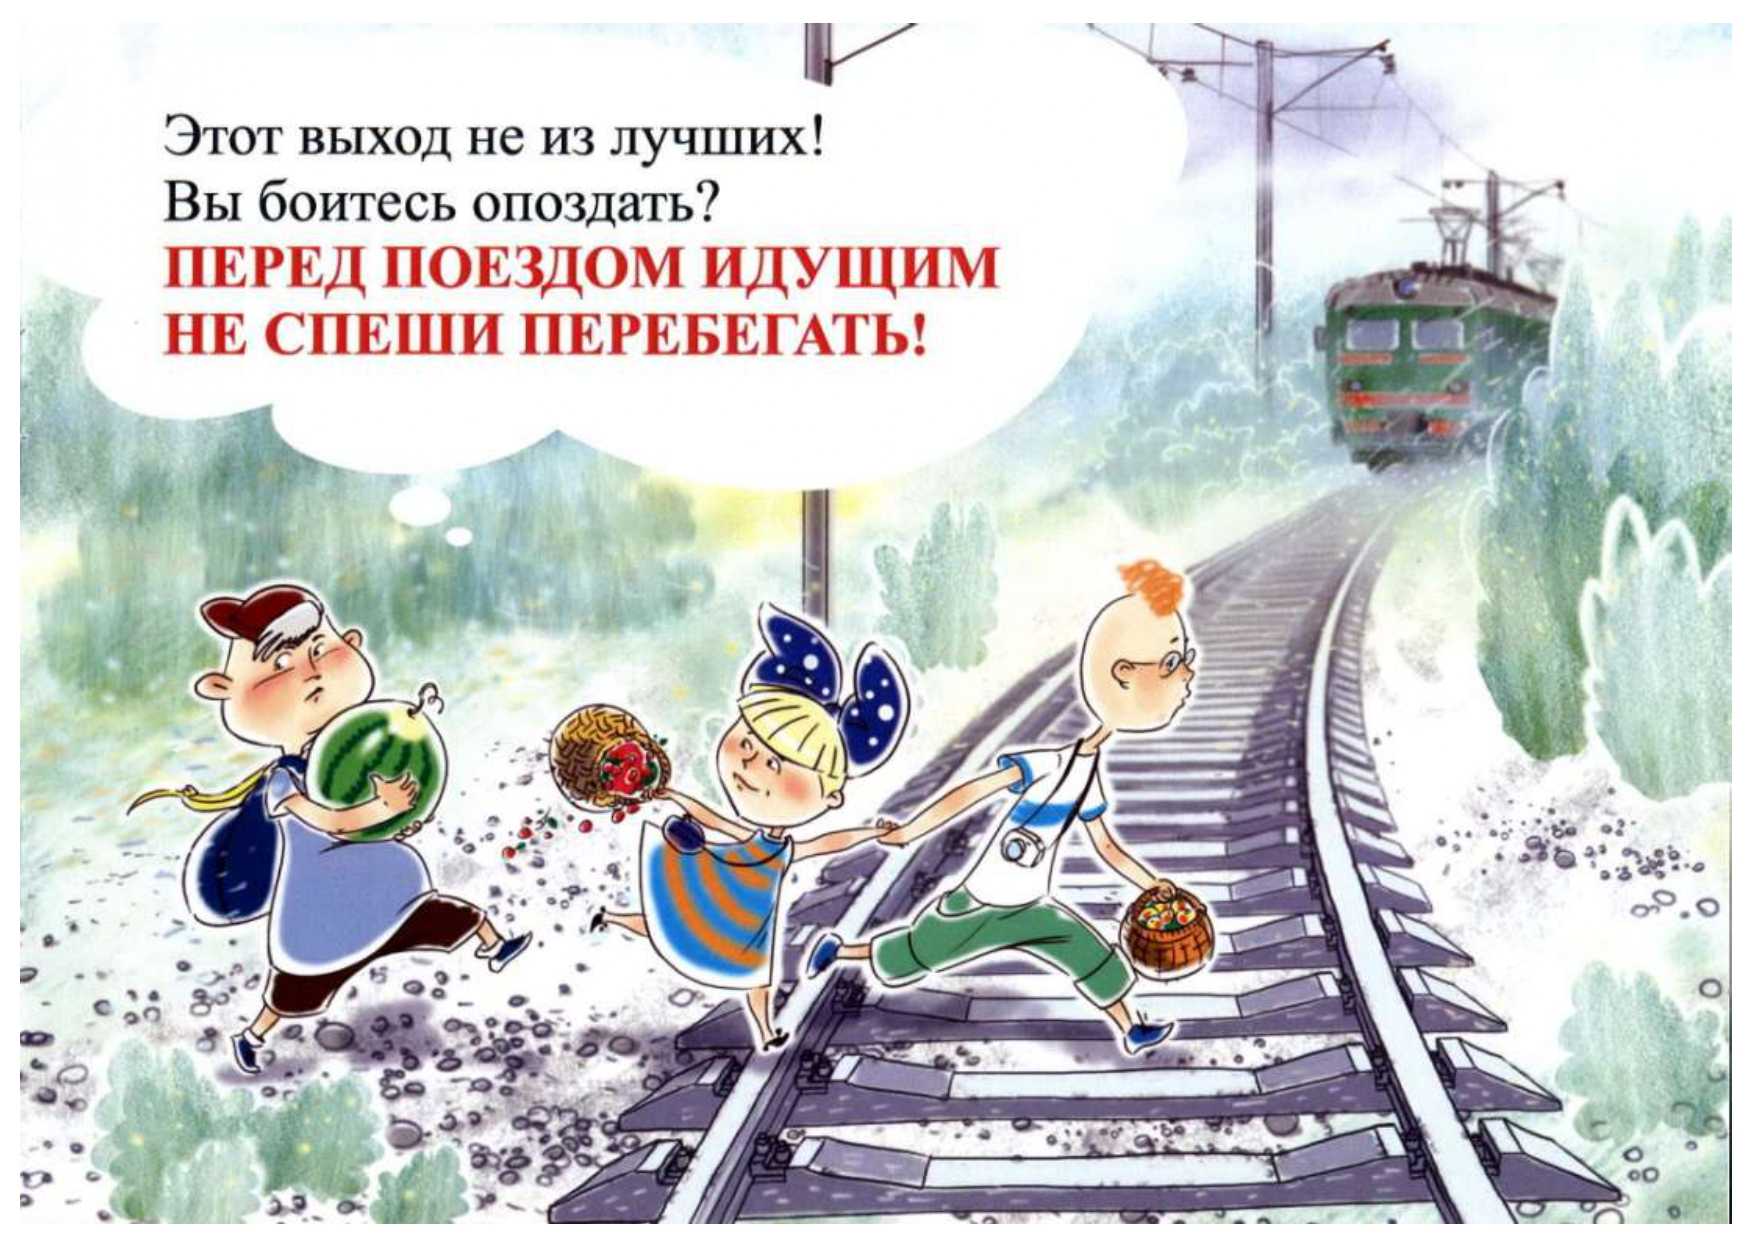 Безопасность в ж/д транспорте и на железной дороге для детей: наслаждаемся путешествием, не забывая о правилах